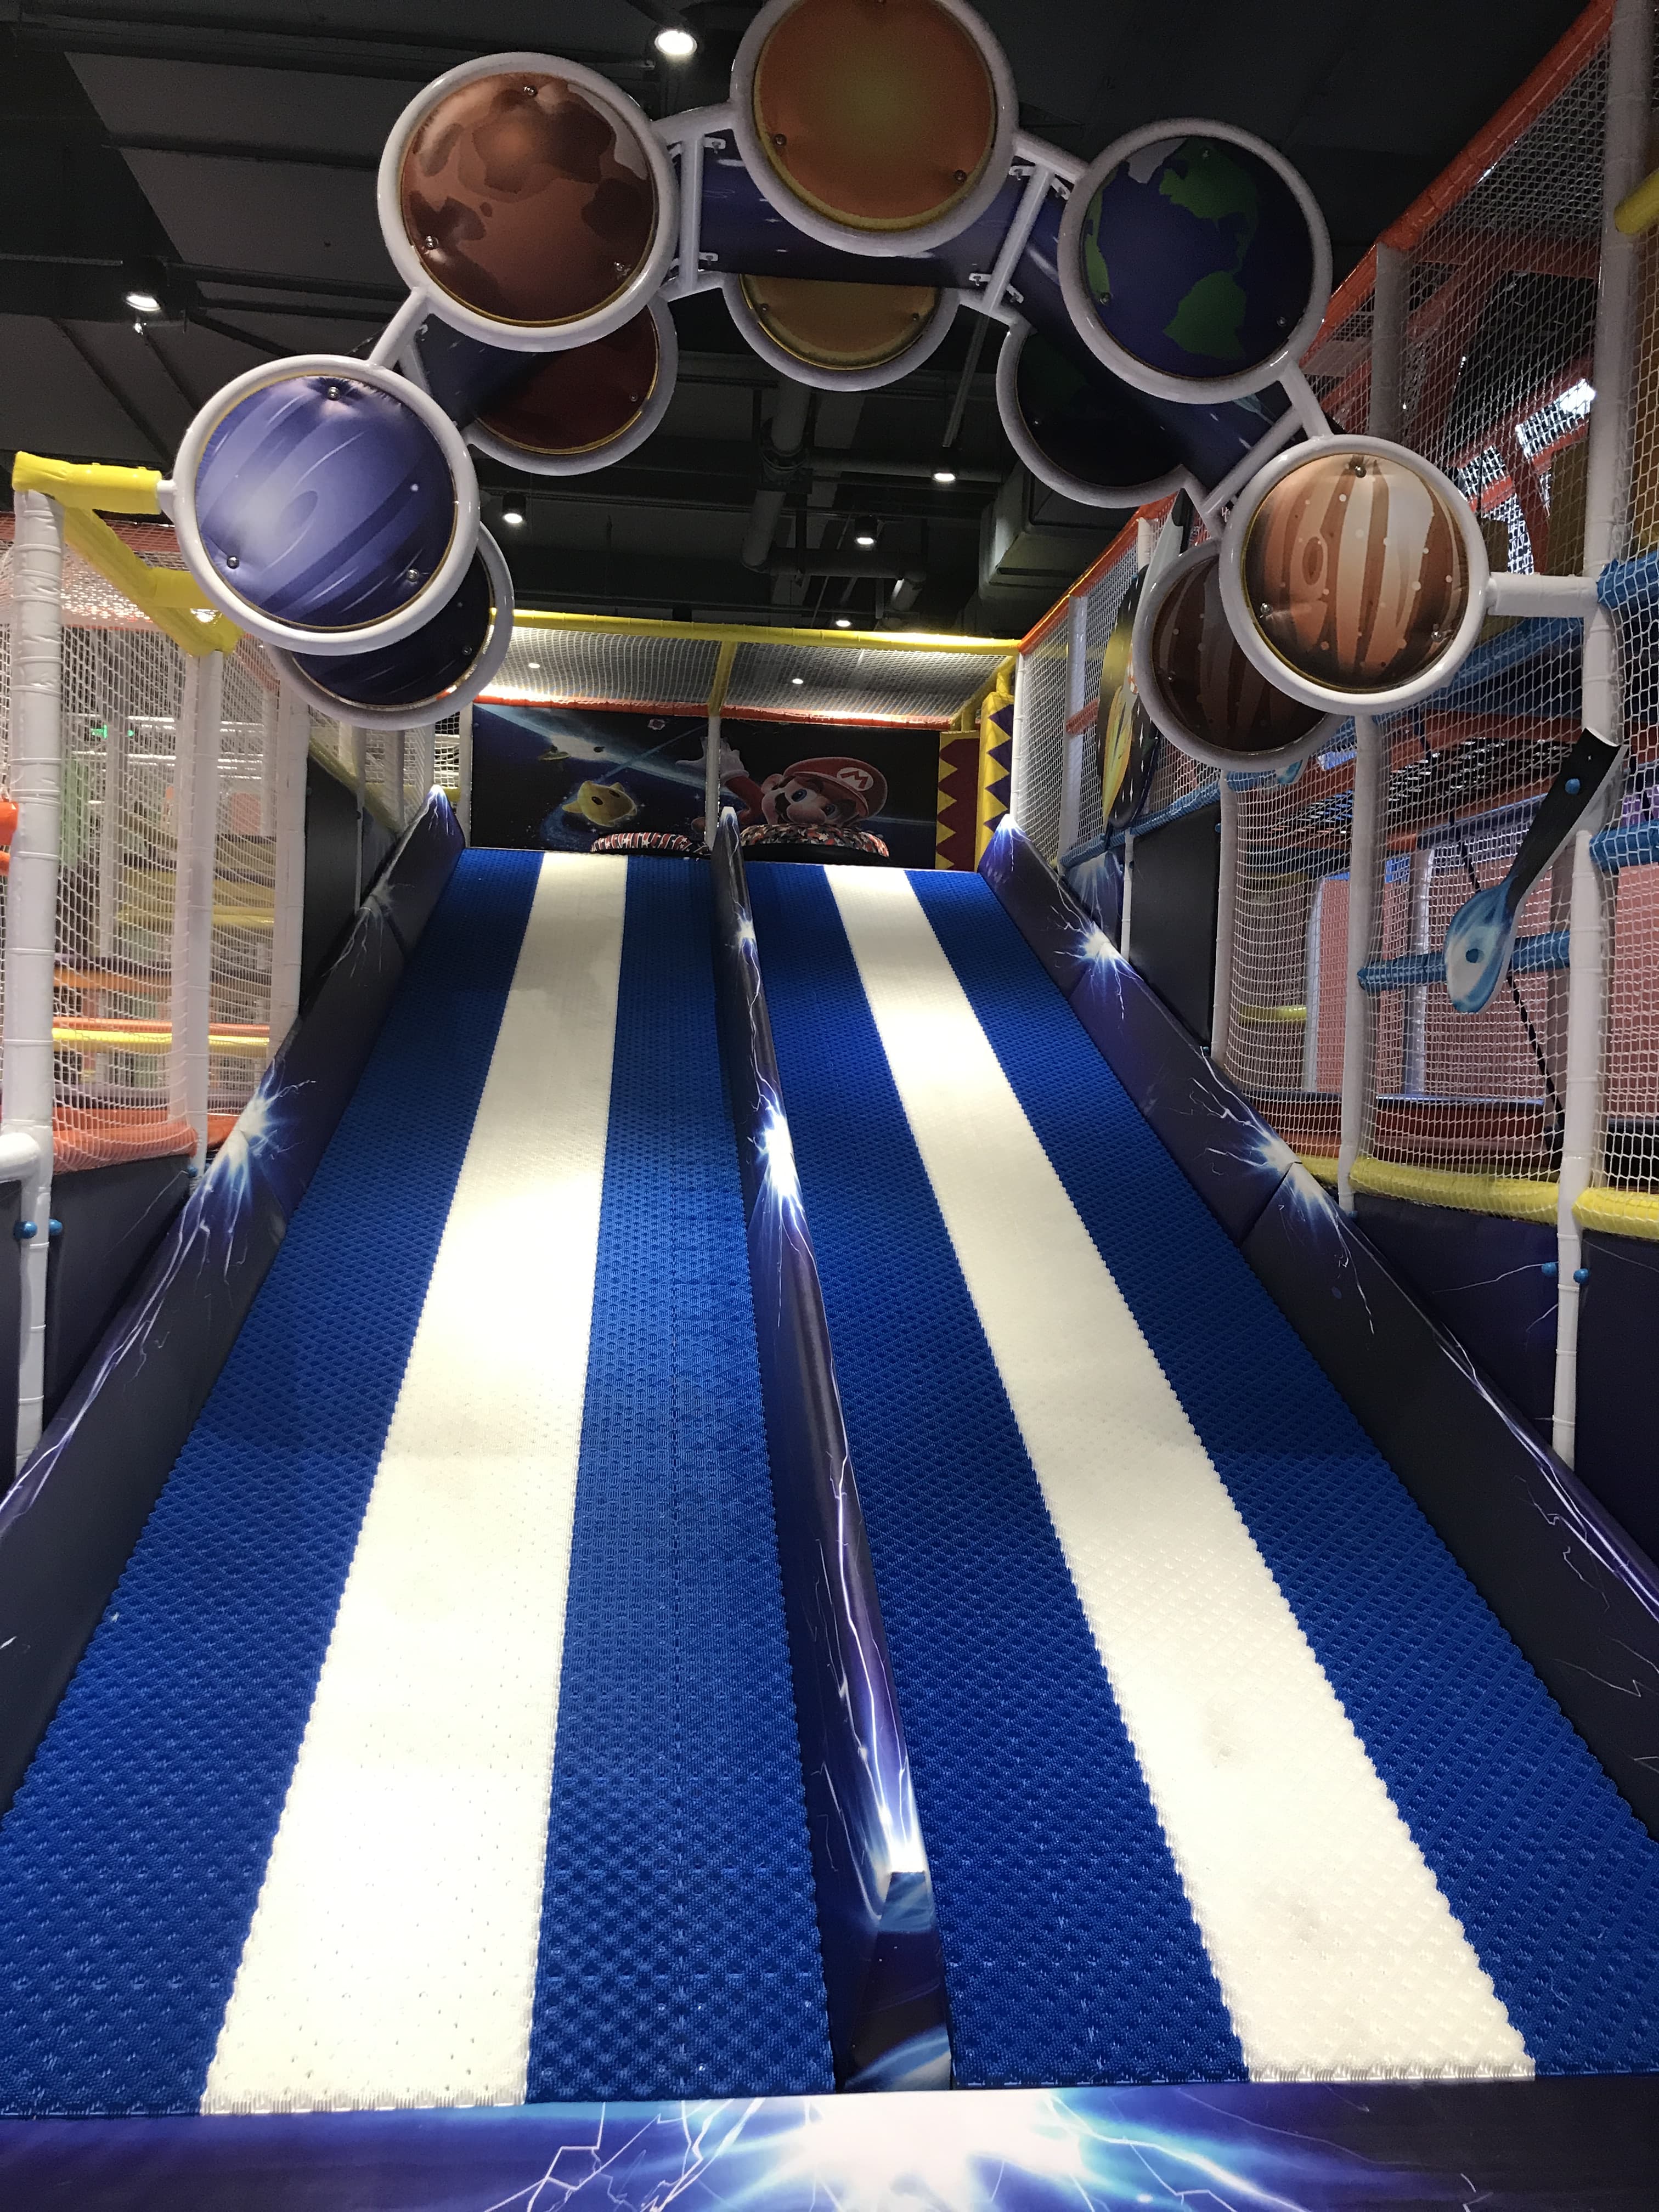 Slide di ciambella del parco giochi indoor in Cina